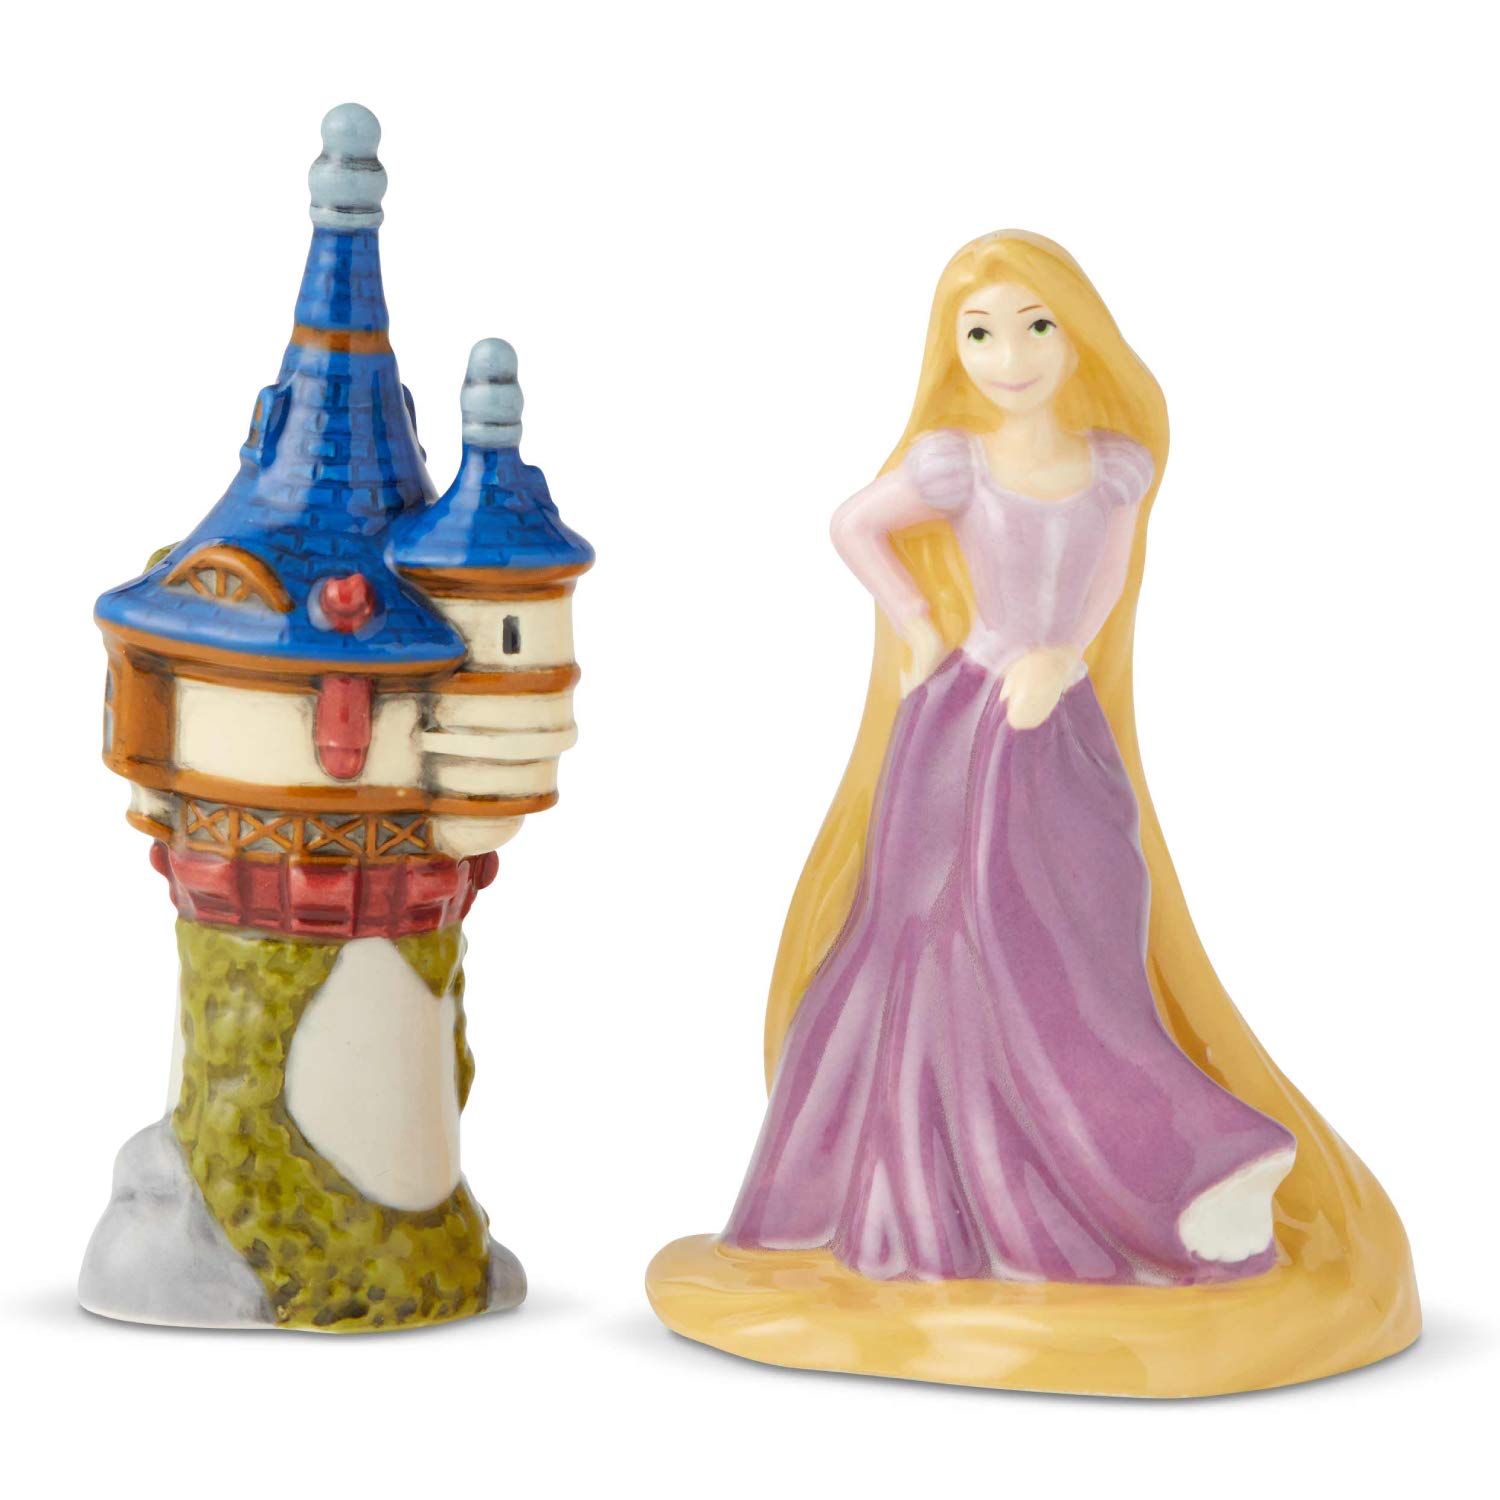 Rapunzel and Tower Salt & Pepper Shaker Set - image 1 of 2